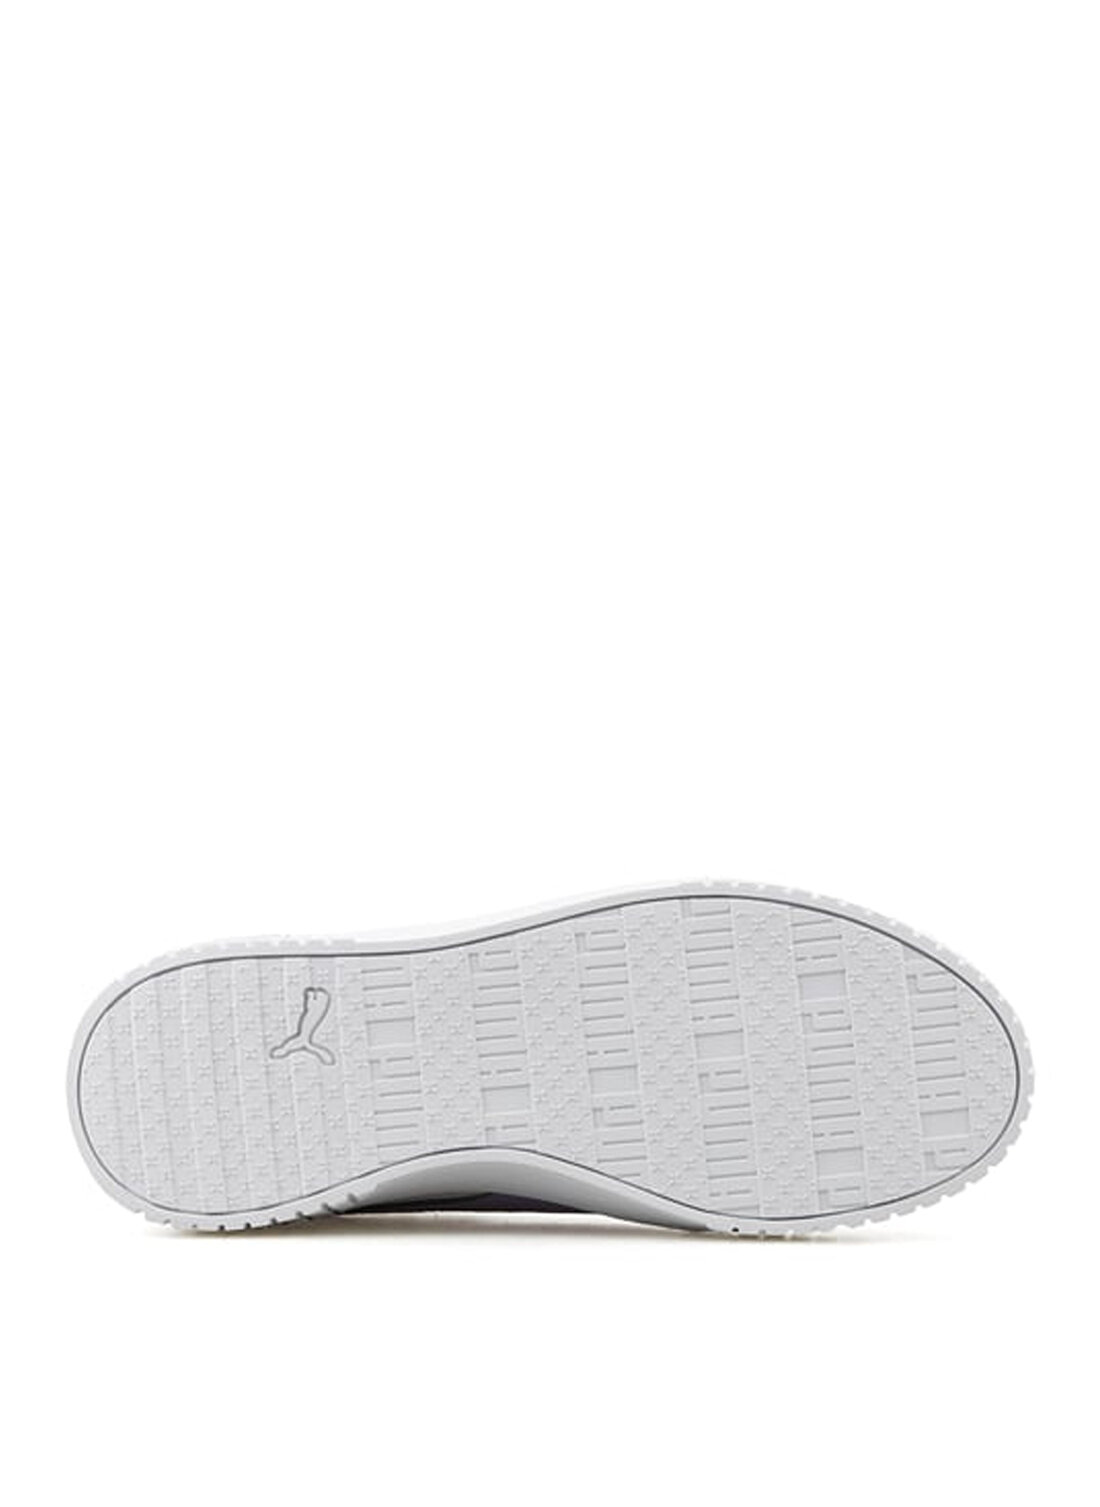 Puma Beyaz Kız Çocuk Yürüyüş Ayakkabısı 38618506-Carina 2.0 Jr